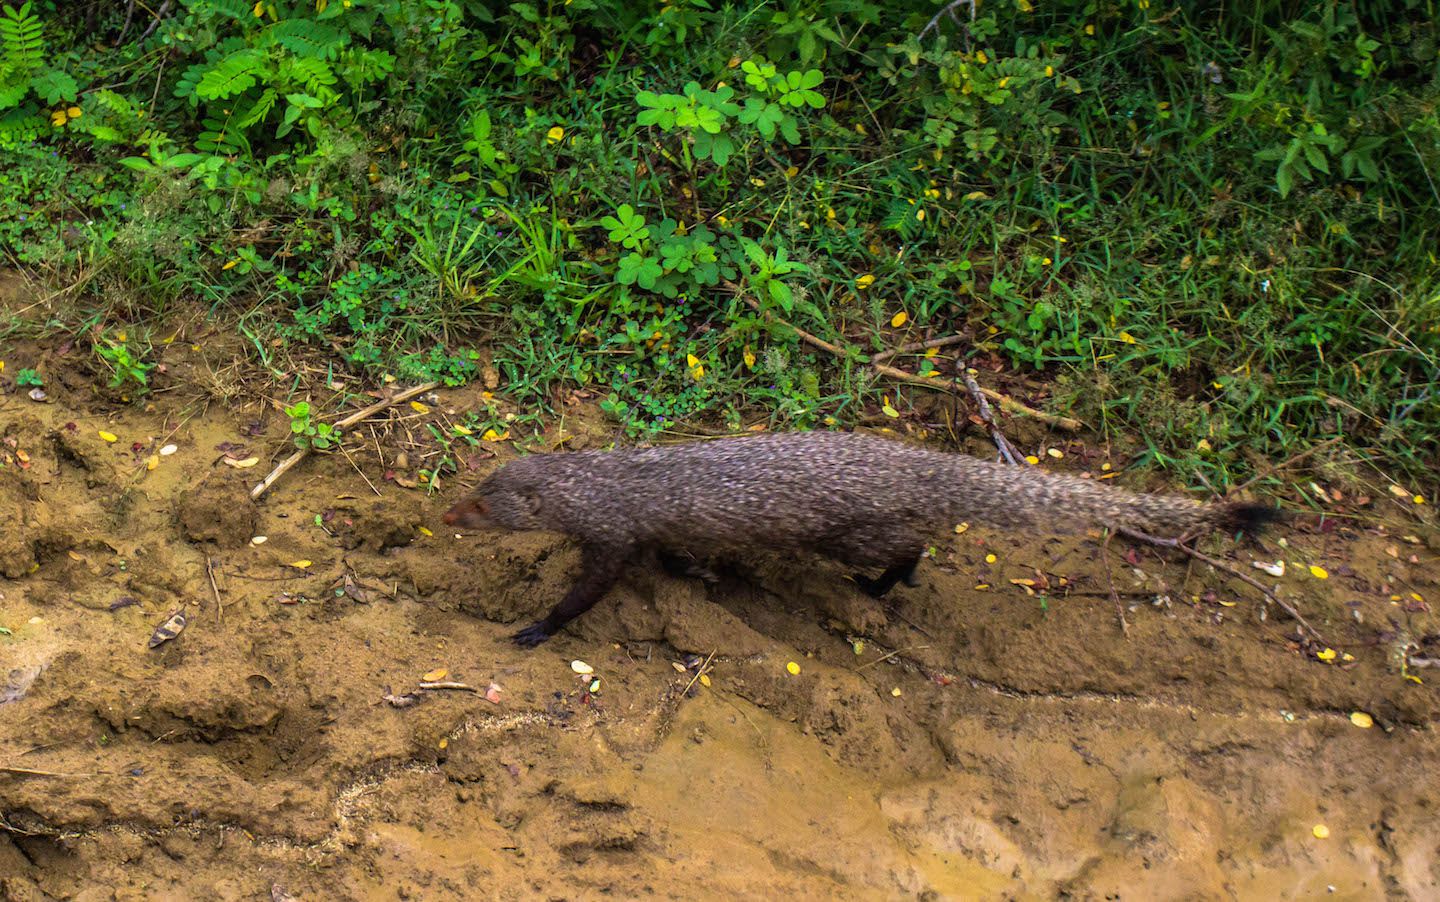 Mongoose, Yala National Park, Sri Lanka